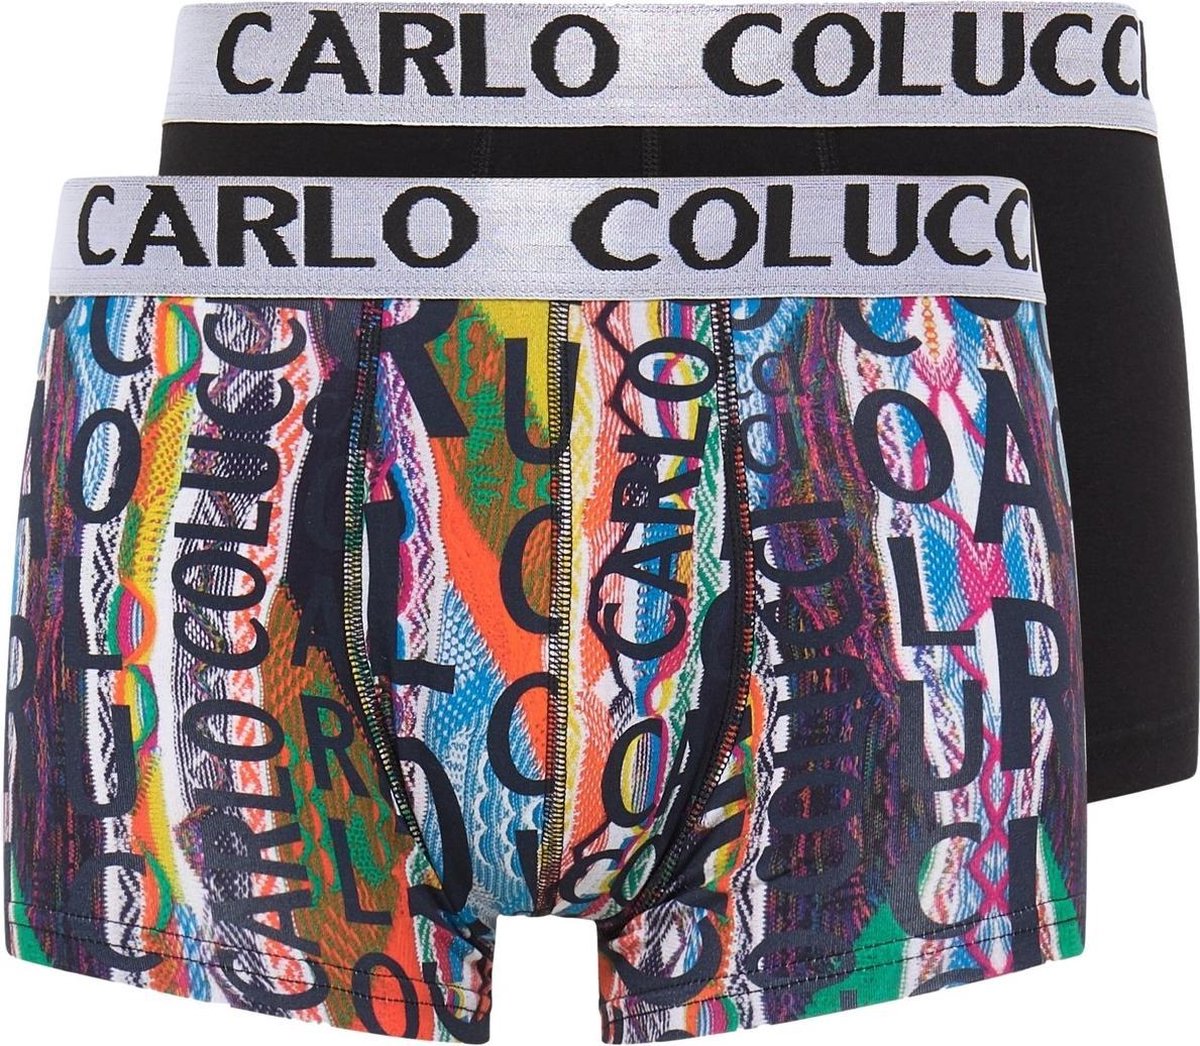 Carlo Colucci Underwear 2-Pack Trunks Multicolor 201